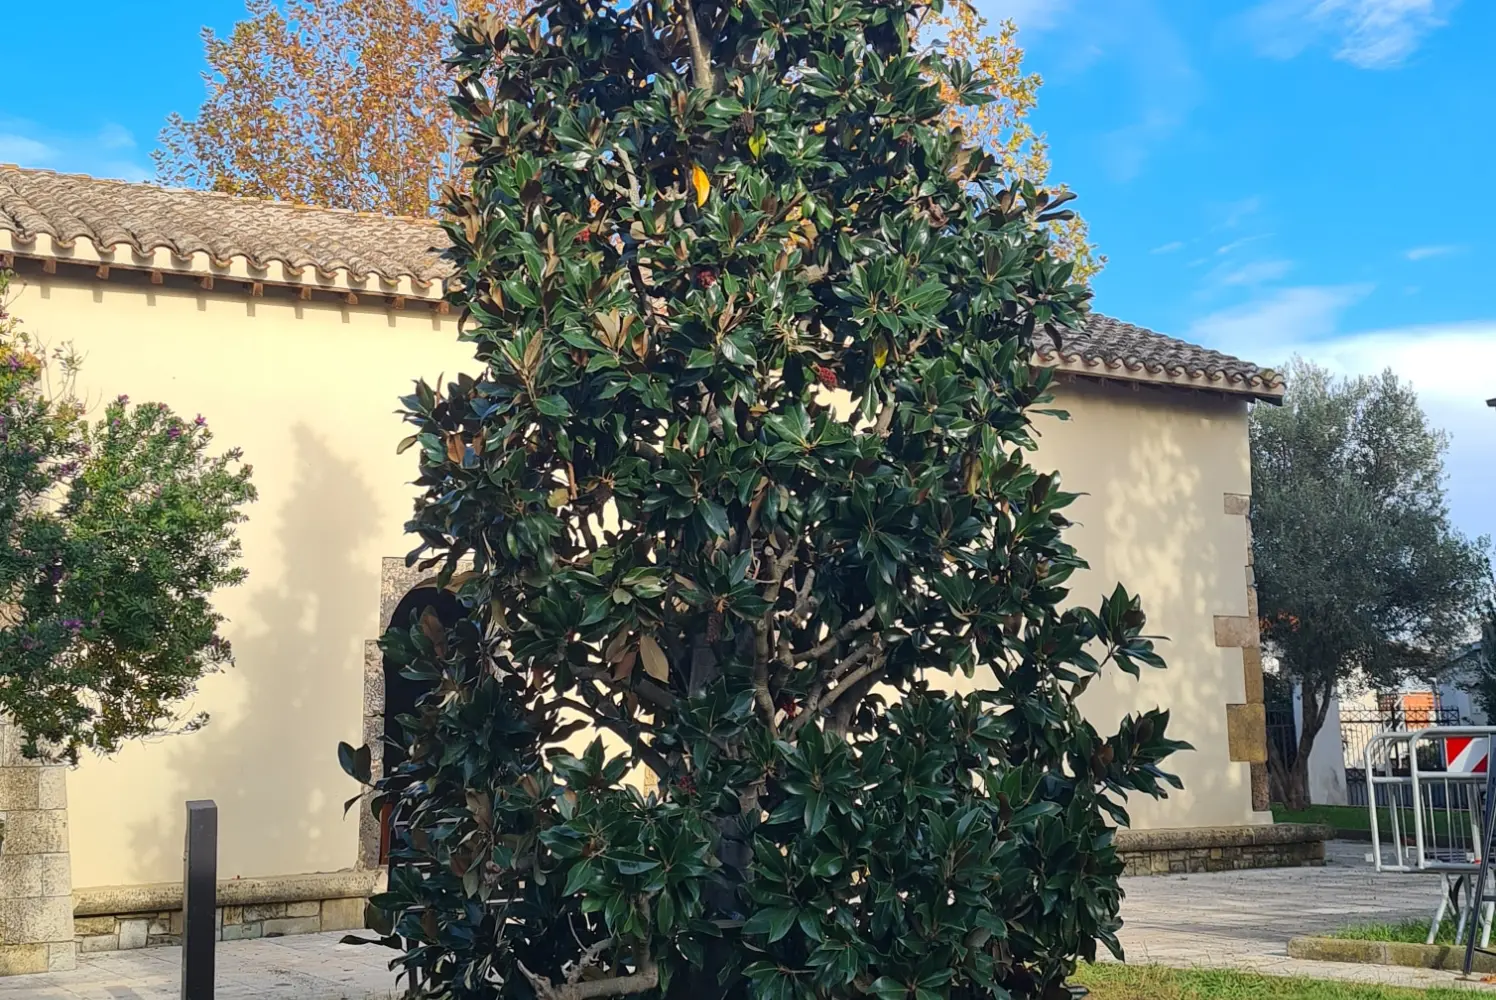 La magnolia di 8 metri (foto Scanu)